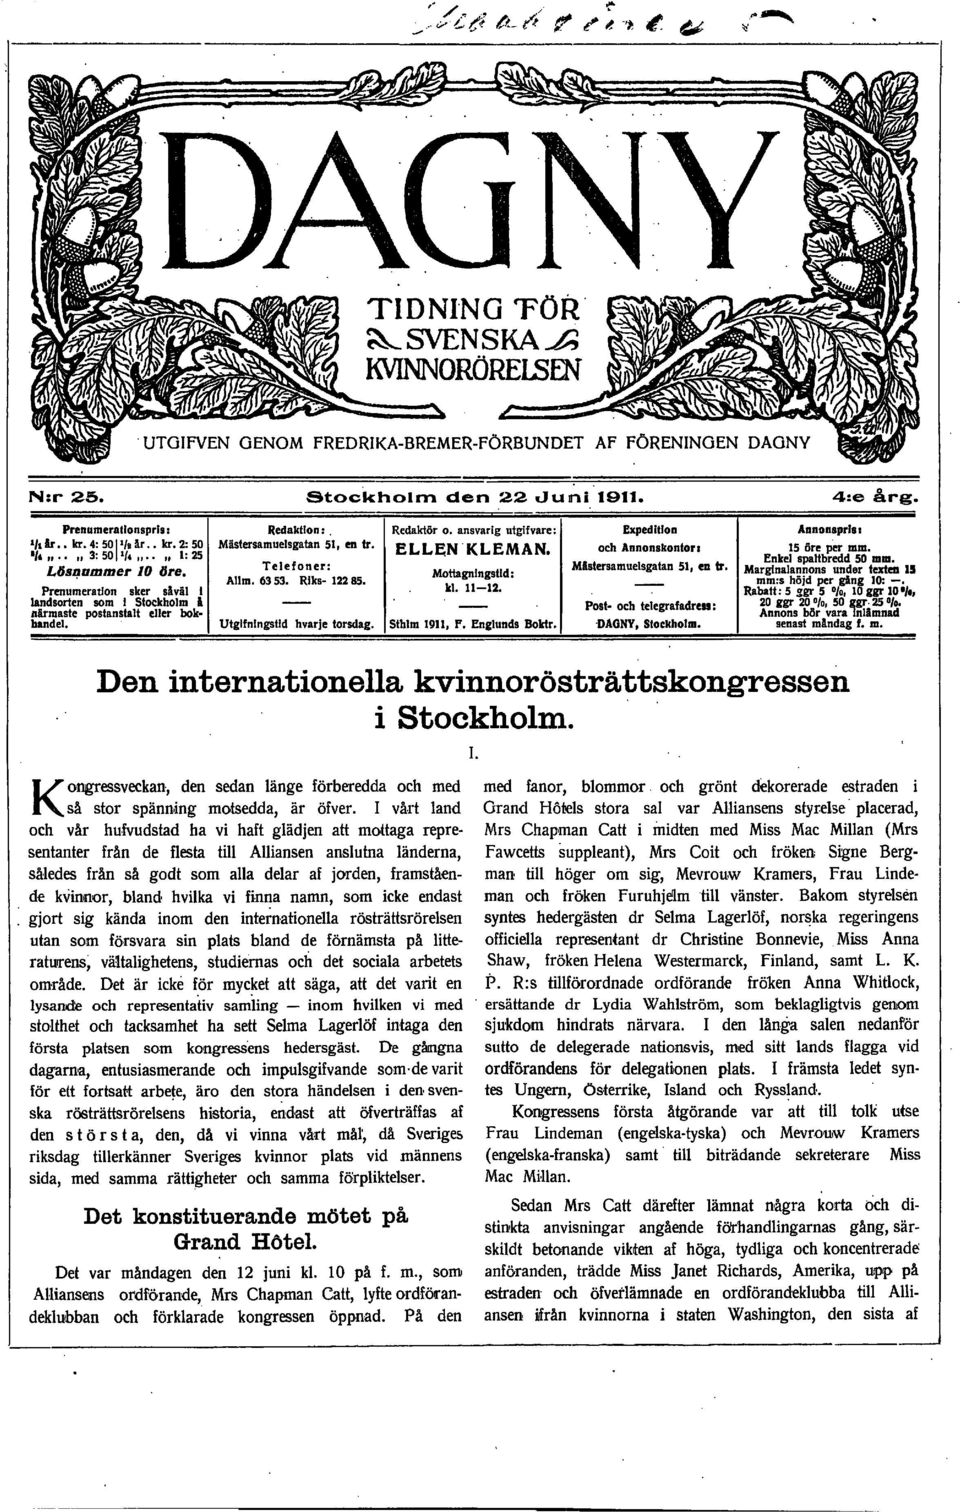 E L L EN ' K L E M A N, Mottagningstld :. kl. 11-12. Sthlm 1911, P. Englunds Boktr. Den internationella kvinnorösträttskongressen i Stockholm.